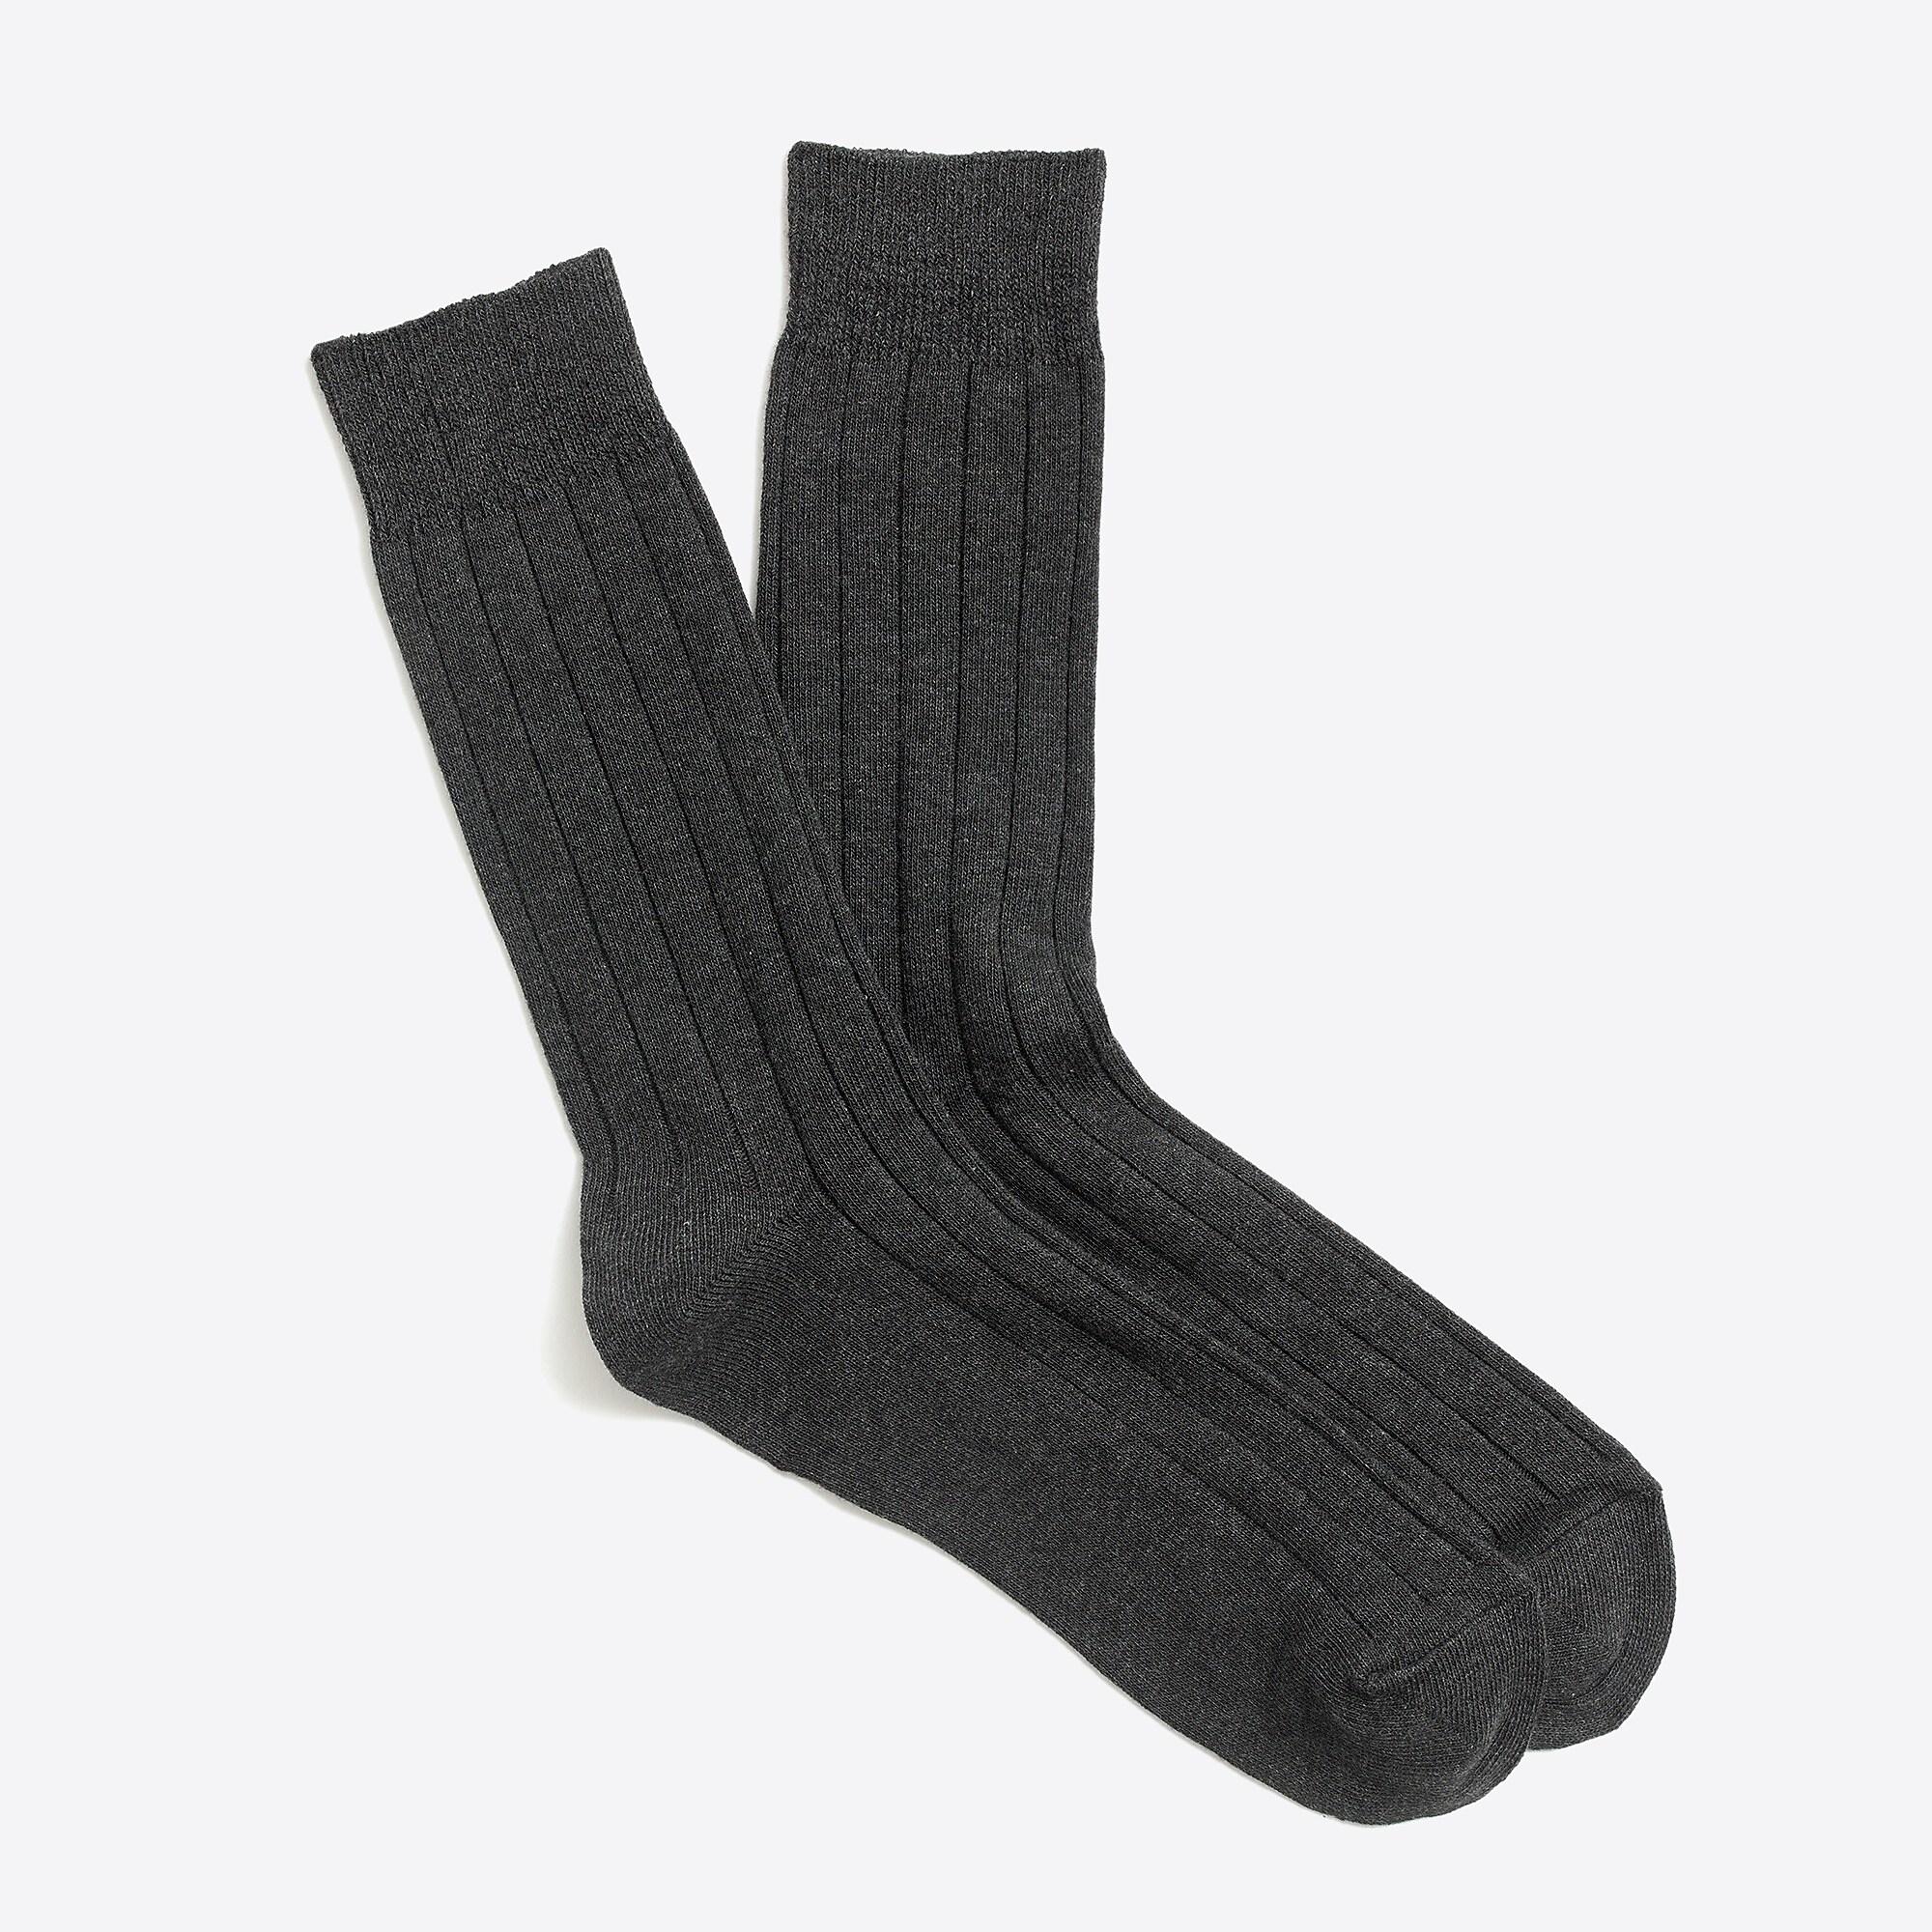 J.Crew Cotton Basic Crew Socks in Gray for Men - Lyst